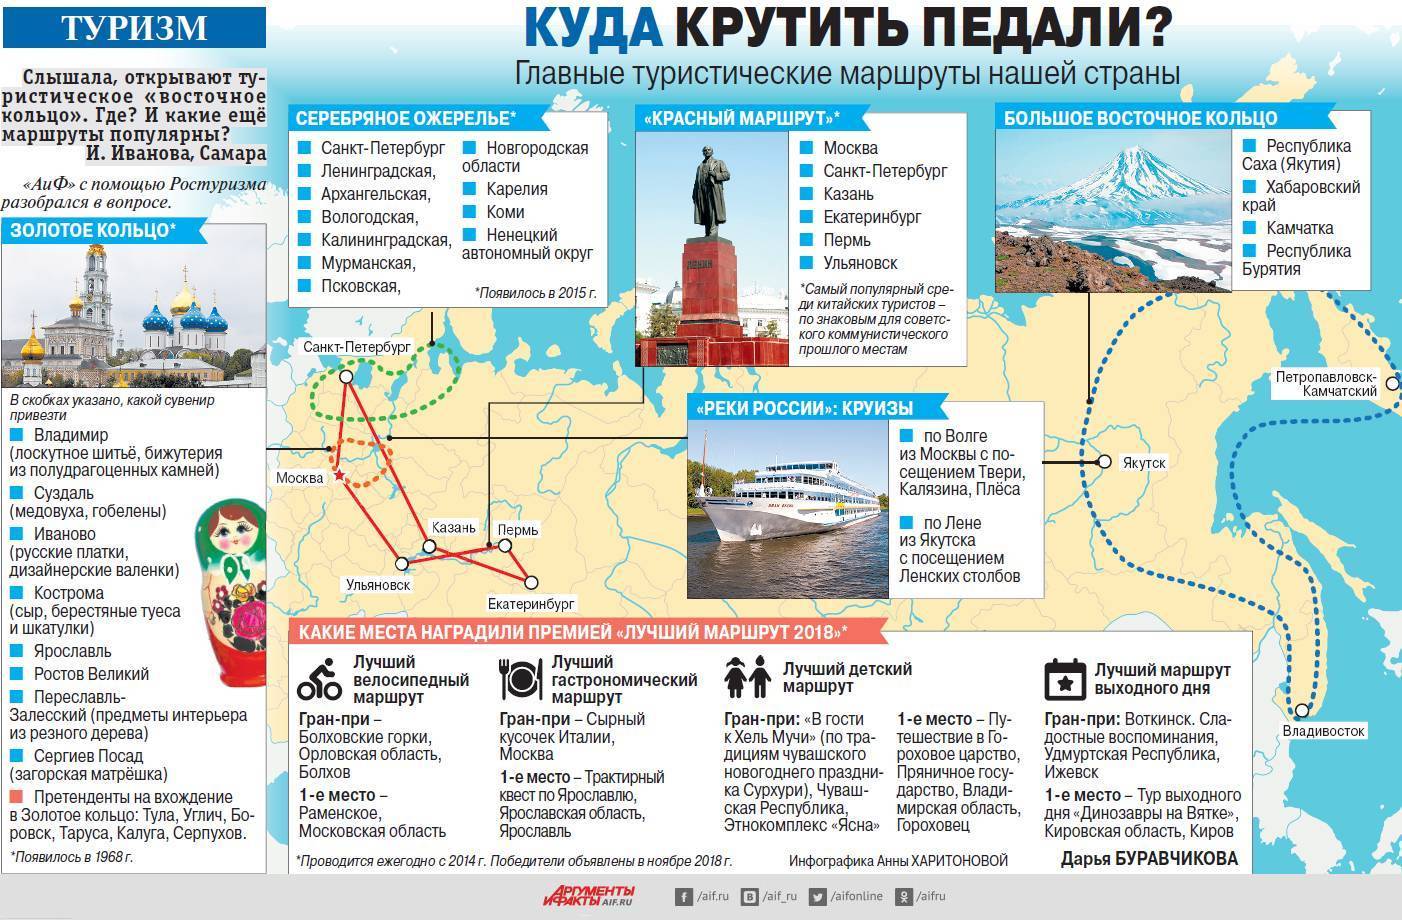 Куда поехать на неделю отдохнуть в россии?